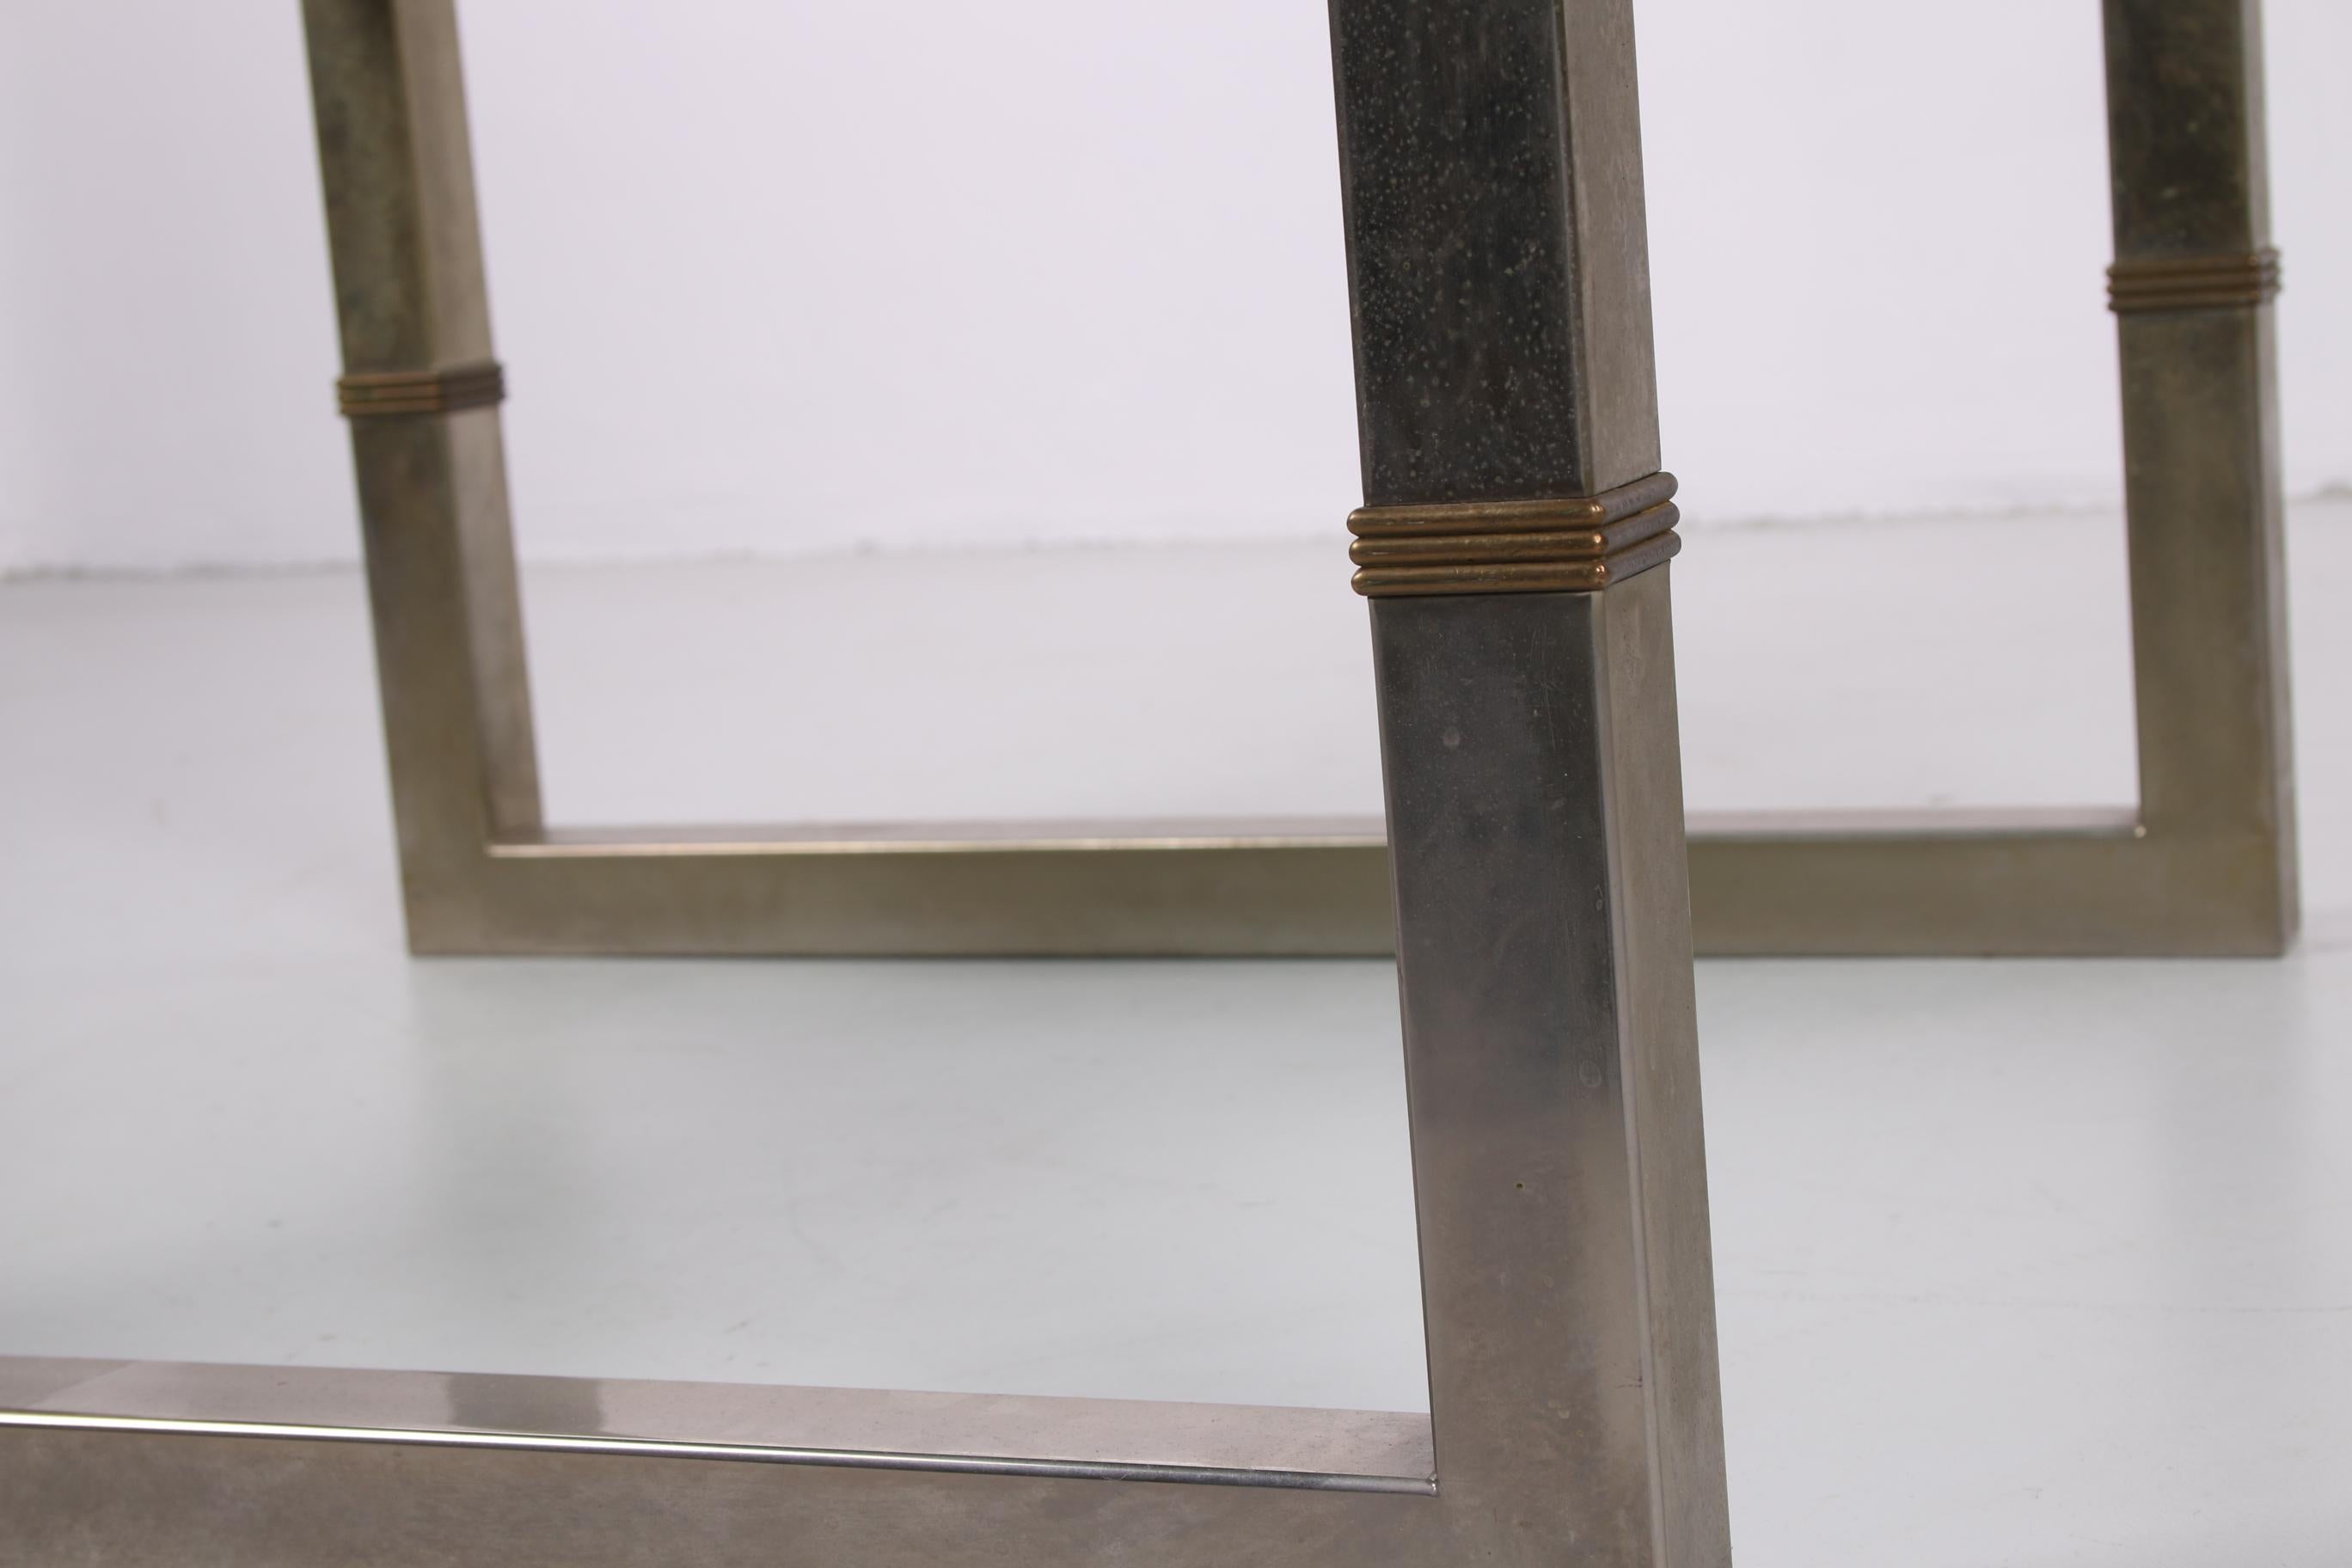 Cette magnifique table basse a été conçue par le designer hongrois Peter Ghyczy dans les années 1980.

La table se compose d'une plaque de verre de 30 mm d'épaisseur qui repose sur un cadre en acier inoxydable. Ce cadre est constitué d'un tube carré